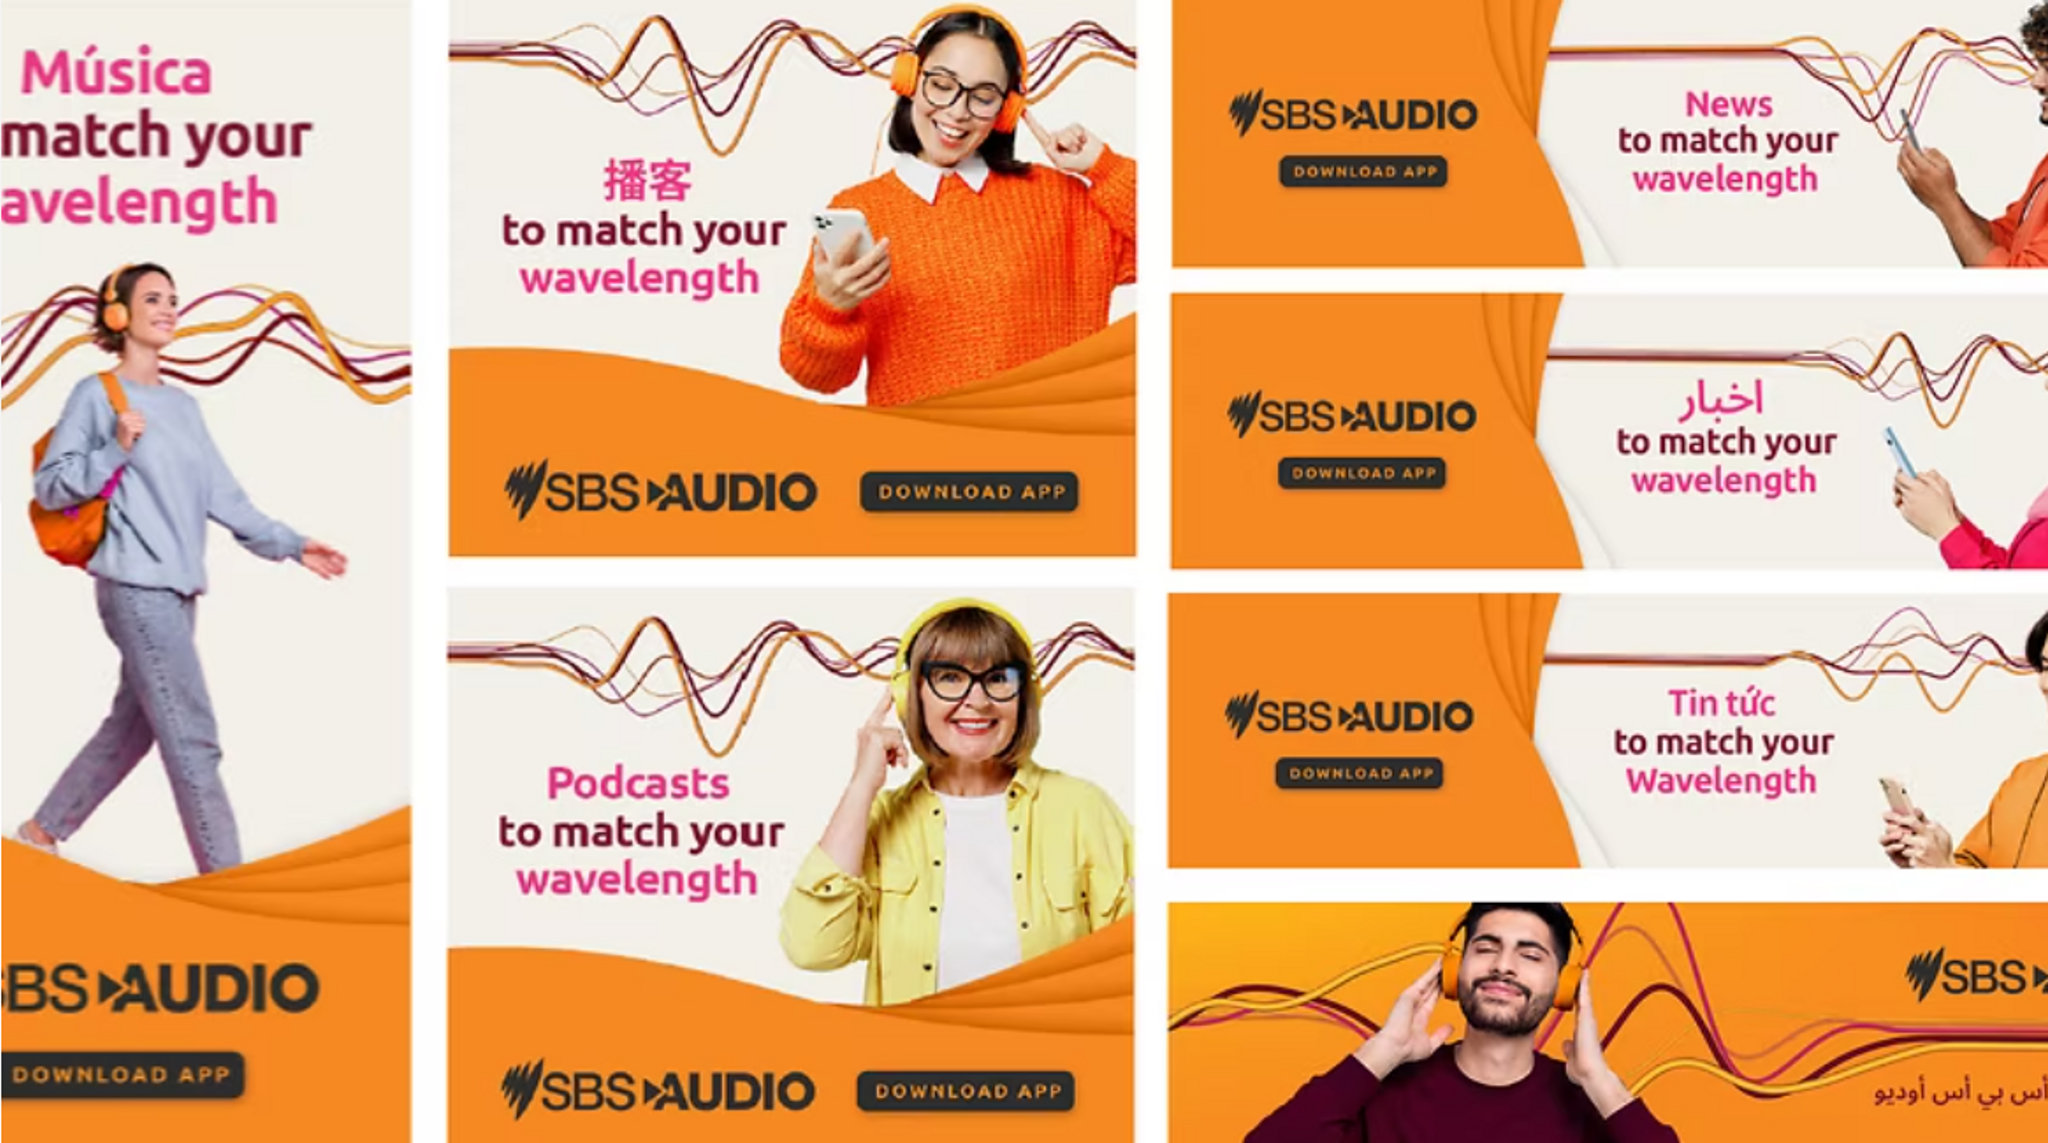 SBS Audio celebrates Aussie multicultural communities